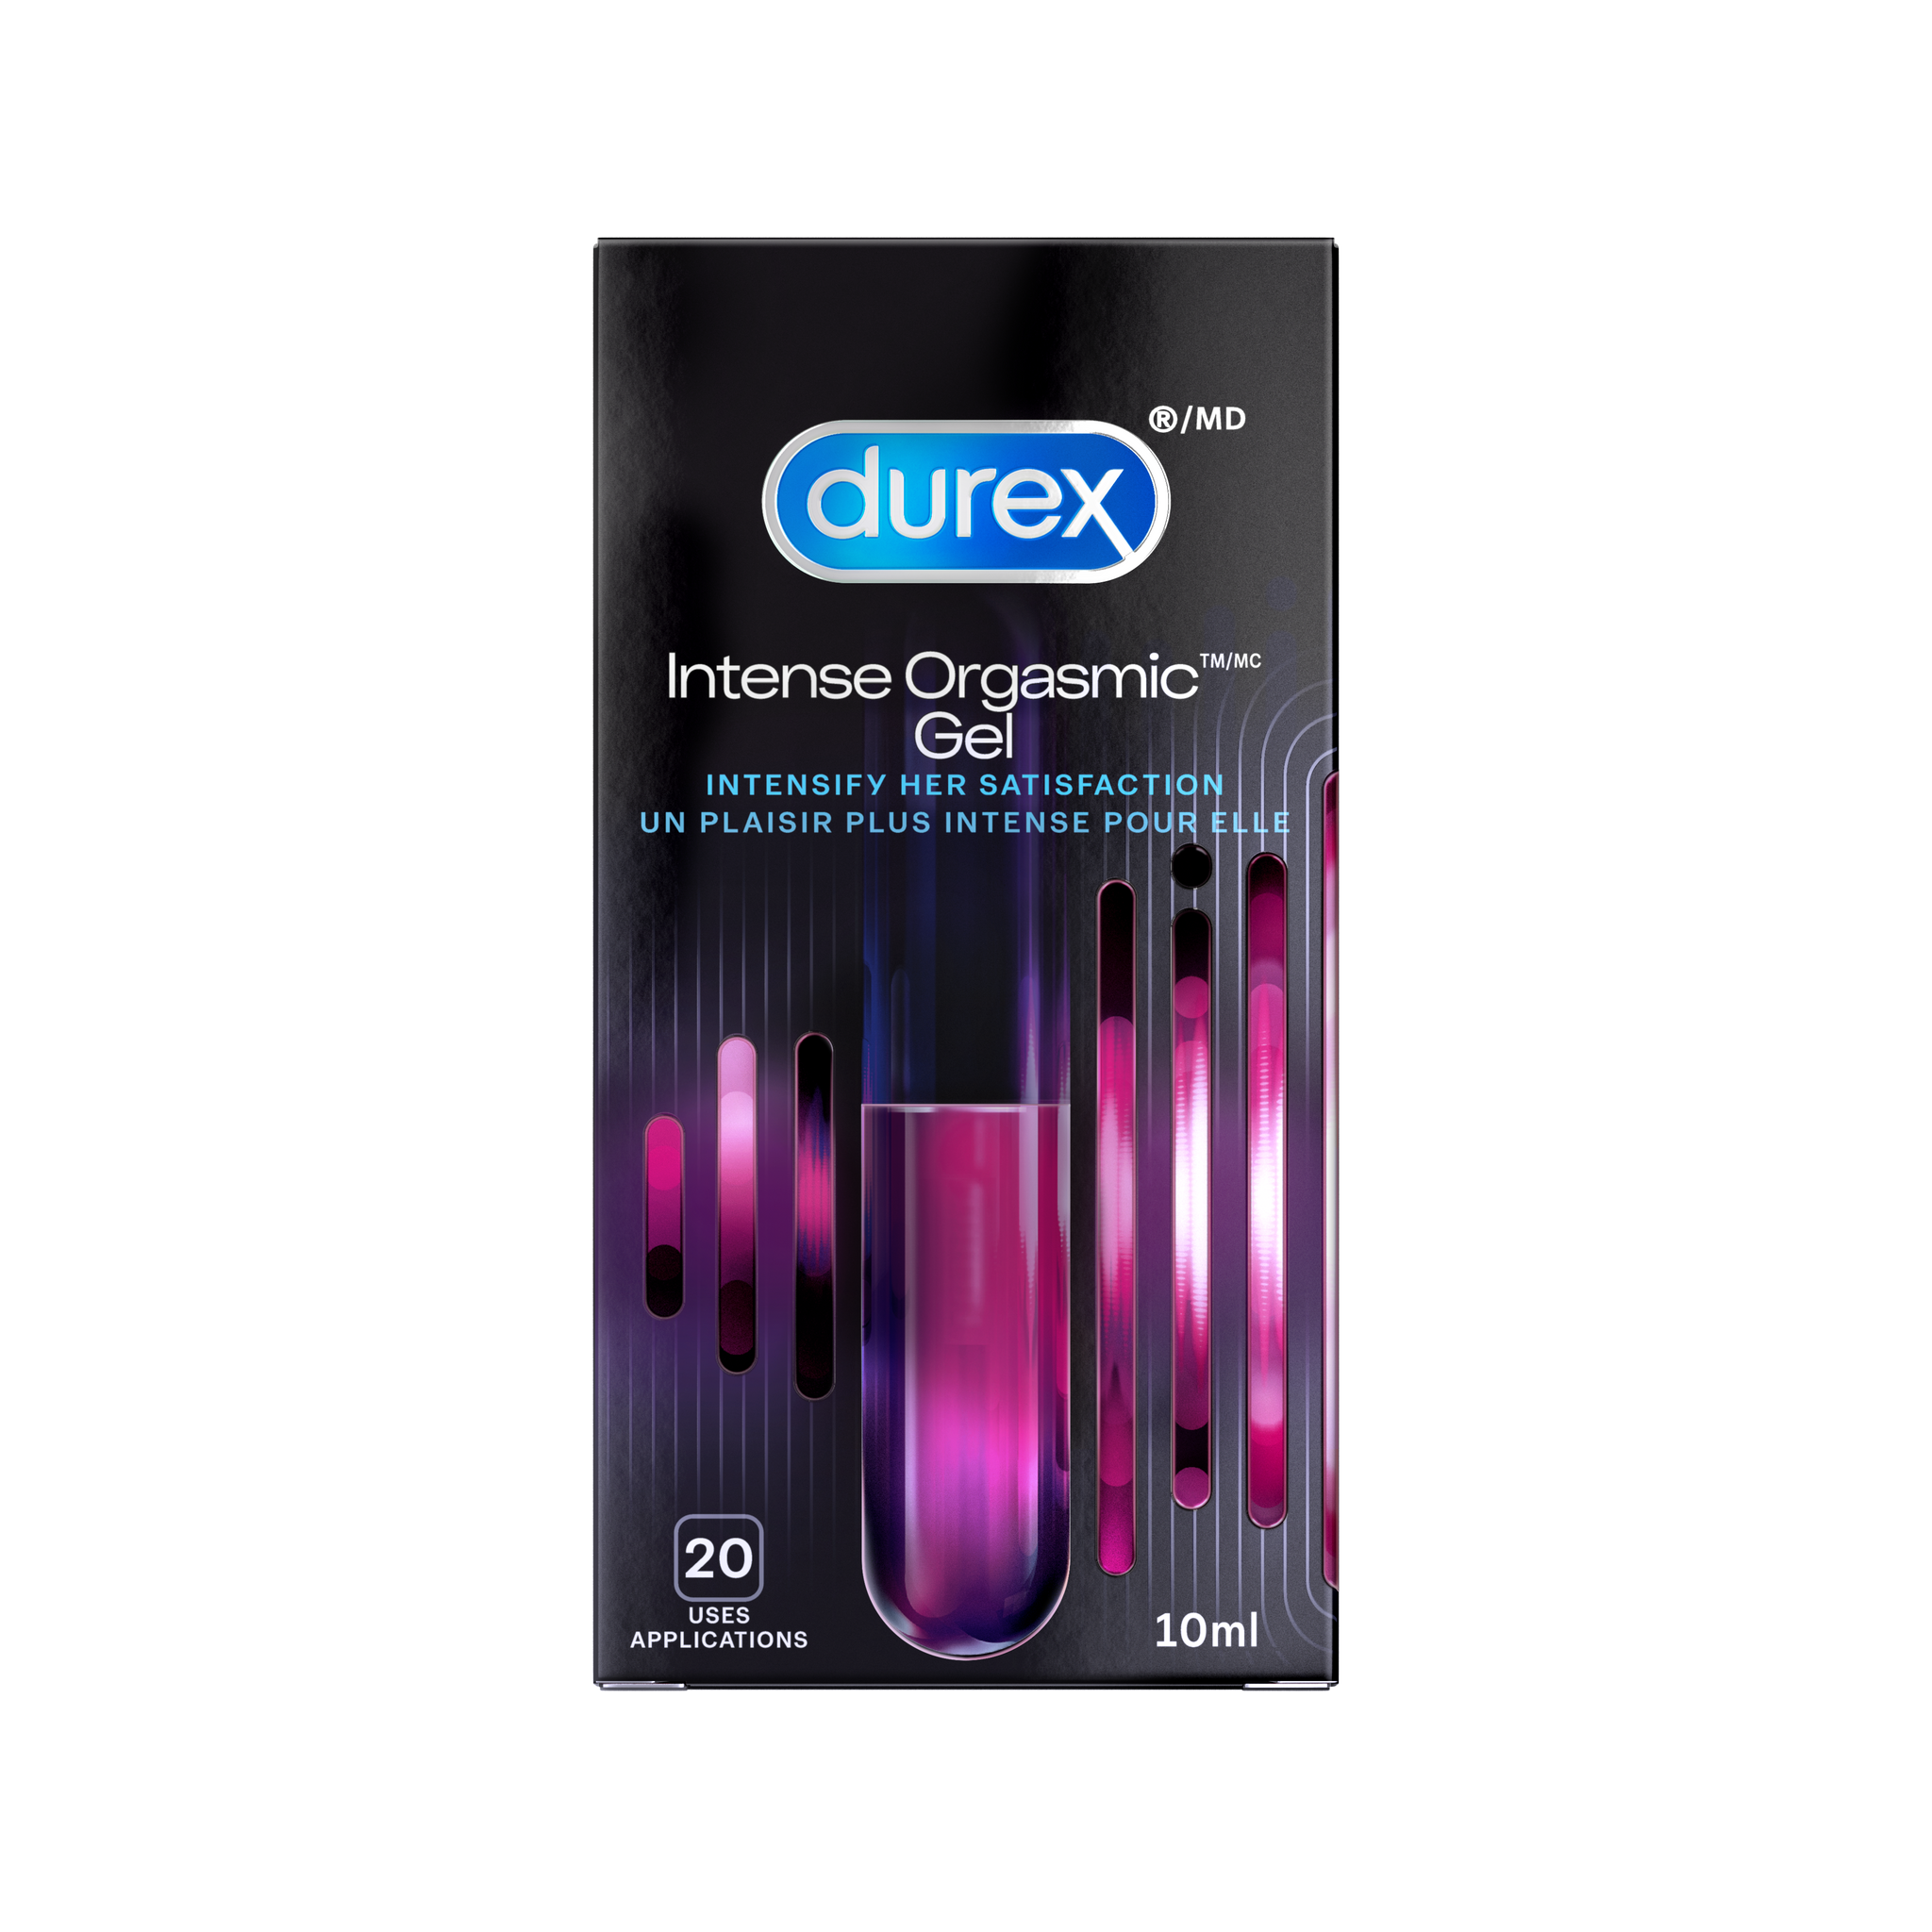 EN Packaged Durex intense gel/ FR Le gel Durex Intense Orgasmic dans son emballage.